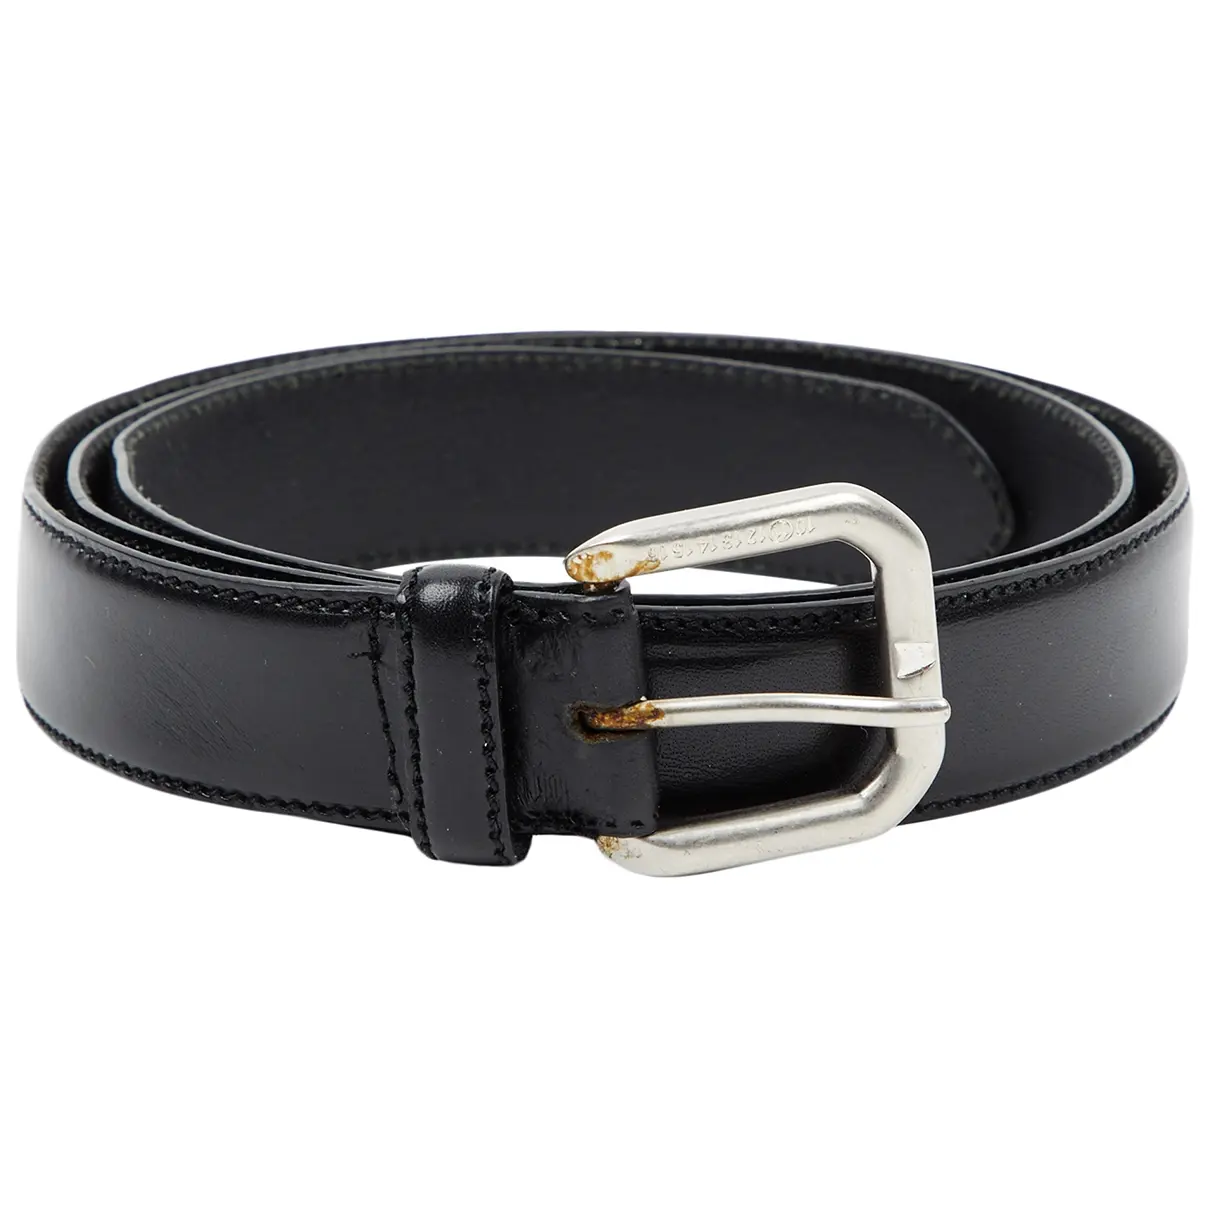 Leather belt Maison Martin Margiela